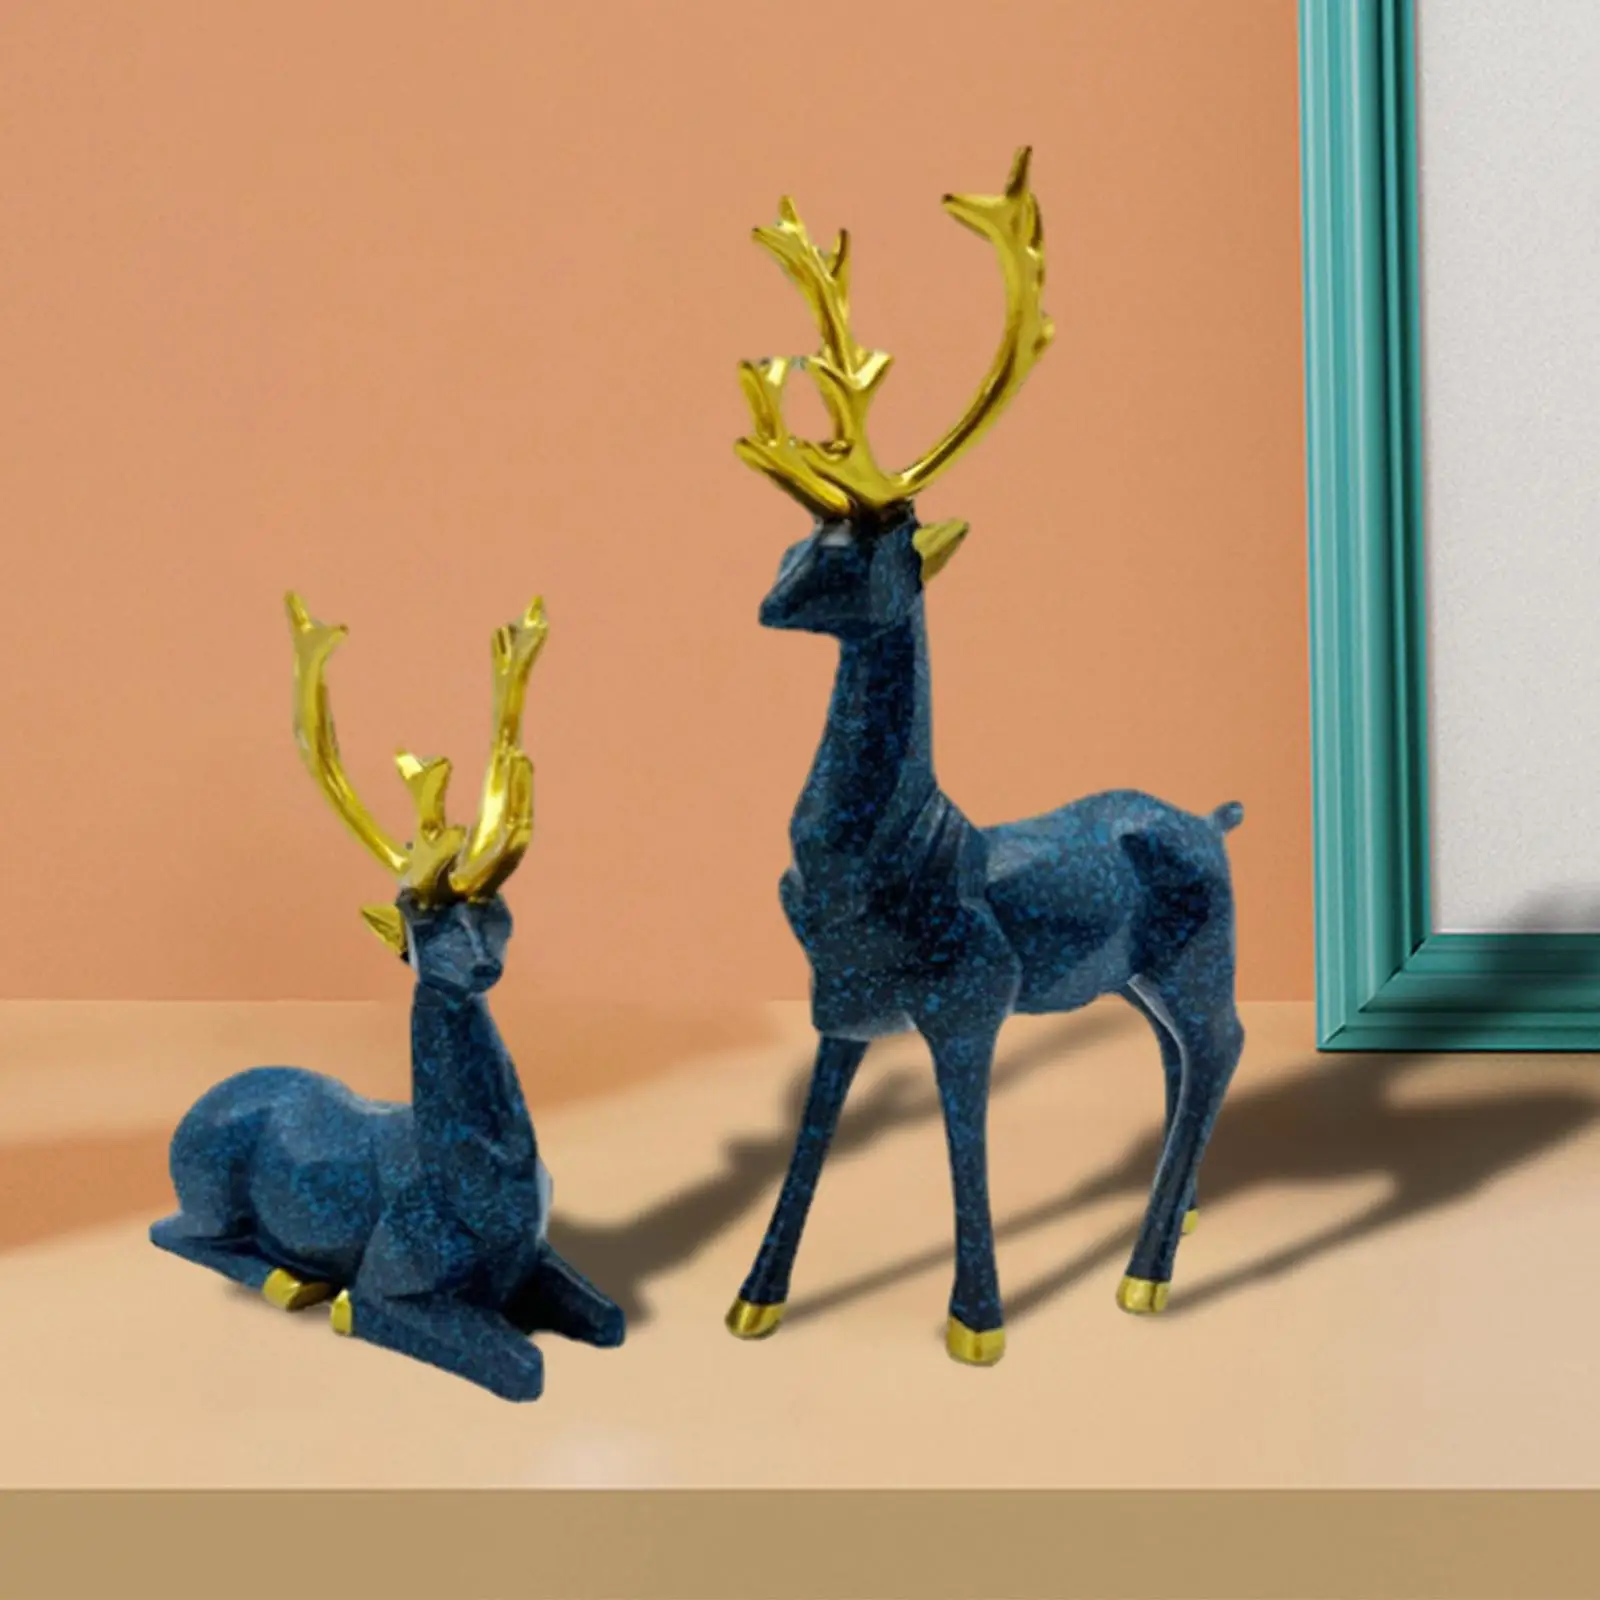 Deer Statue Decoration Resin European Style Deer Figurines Sitting Standing Deer Statues Animal Statue for Office Bedroom Car